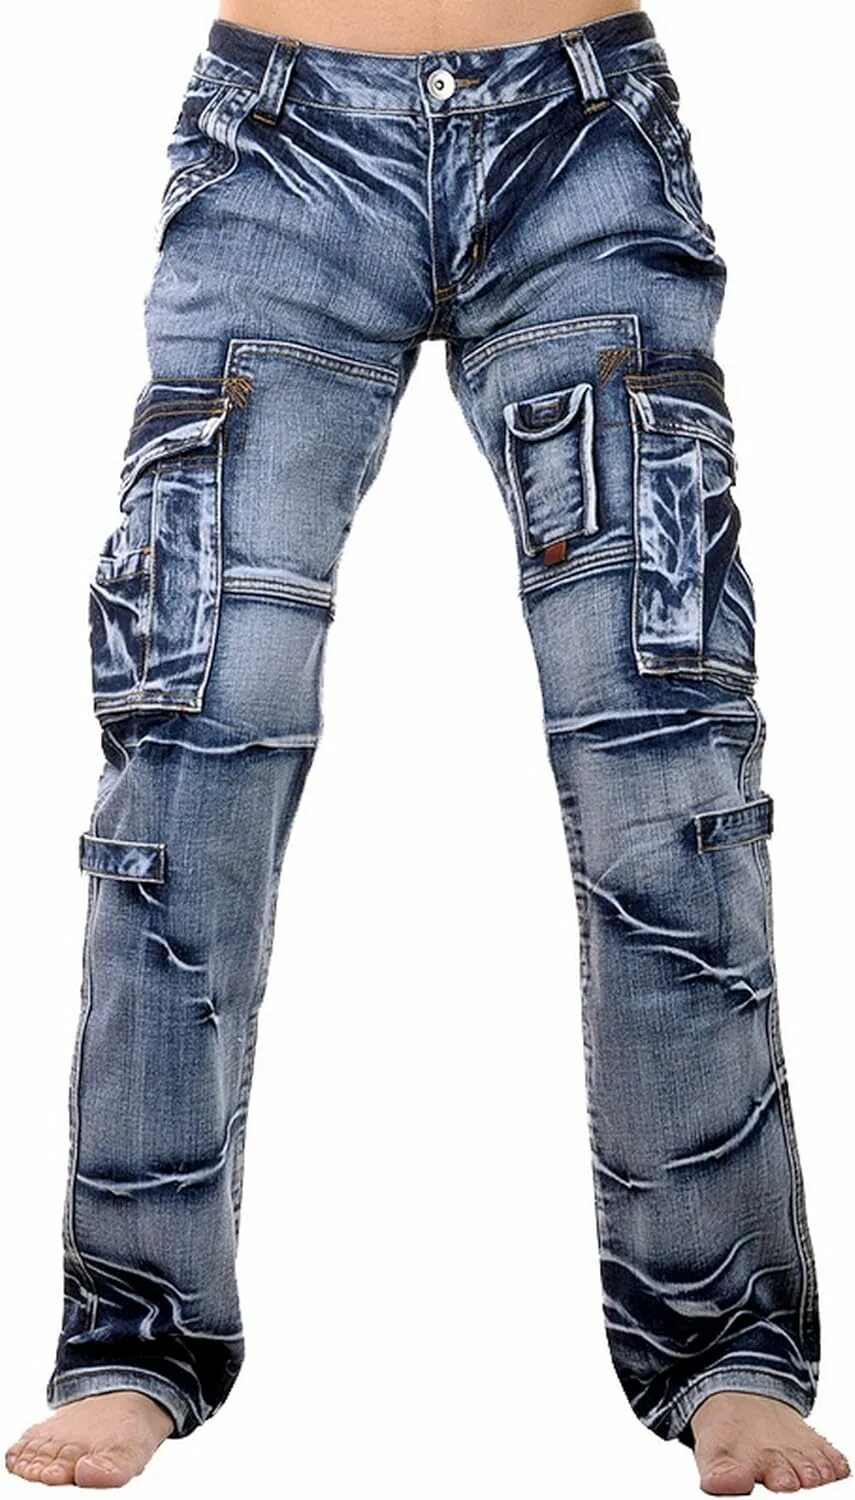 Мужские джинсы с молниями. Мужские джинсы jeansian men's Washed Denim long straight-Leg Pantalones Pants Jeans hombre j008. Жиндци с корманоми. Джинсы с накладными карманами мужские. Широкие джинсы с карманами.